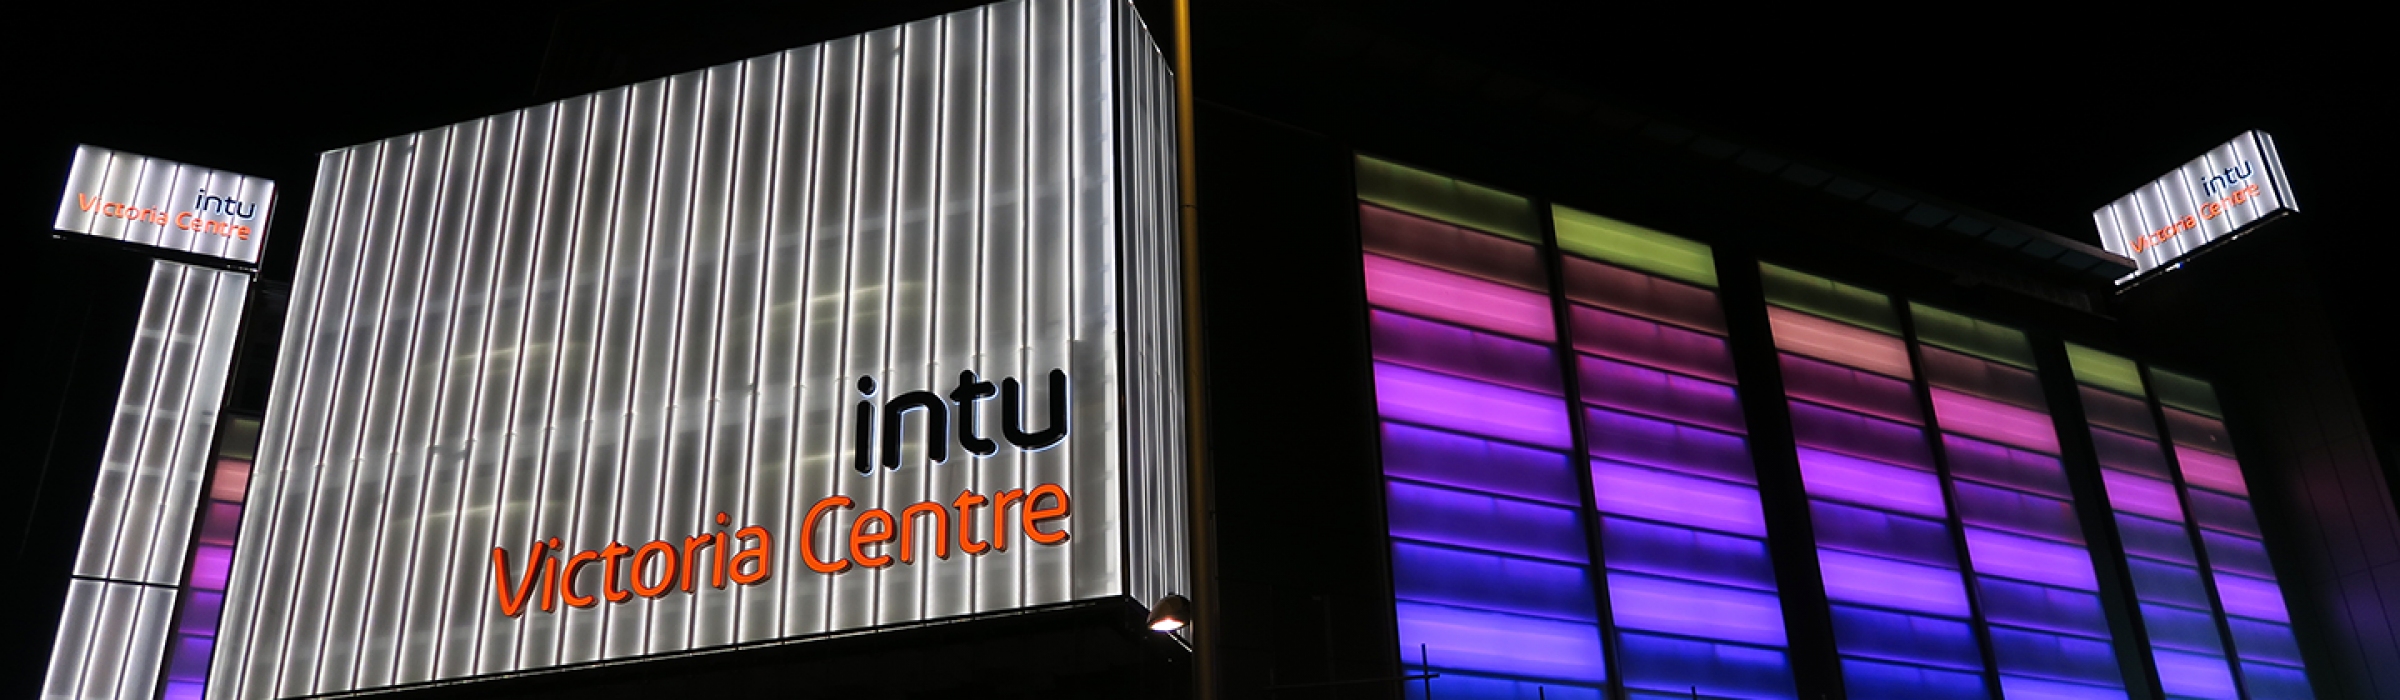 INTU_Victoria_Center,_Nottingham,_Night_view_(20264775508)